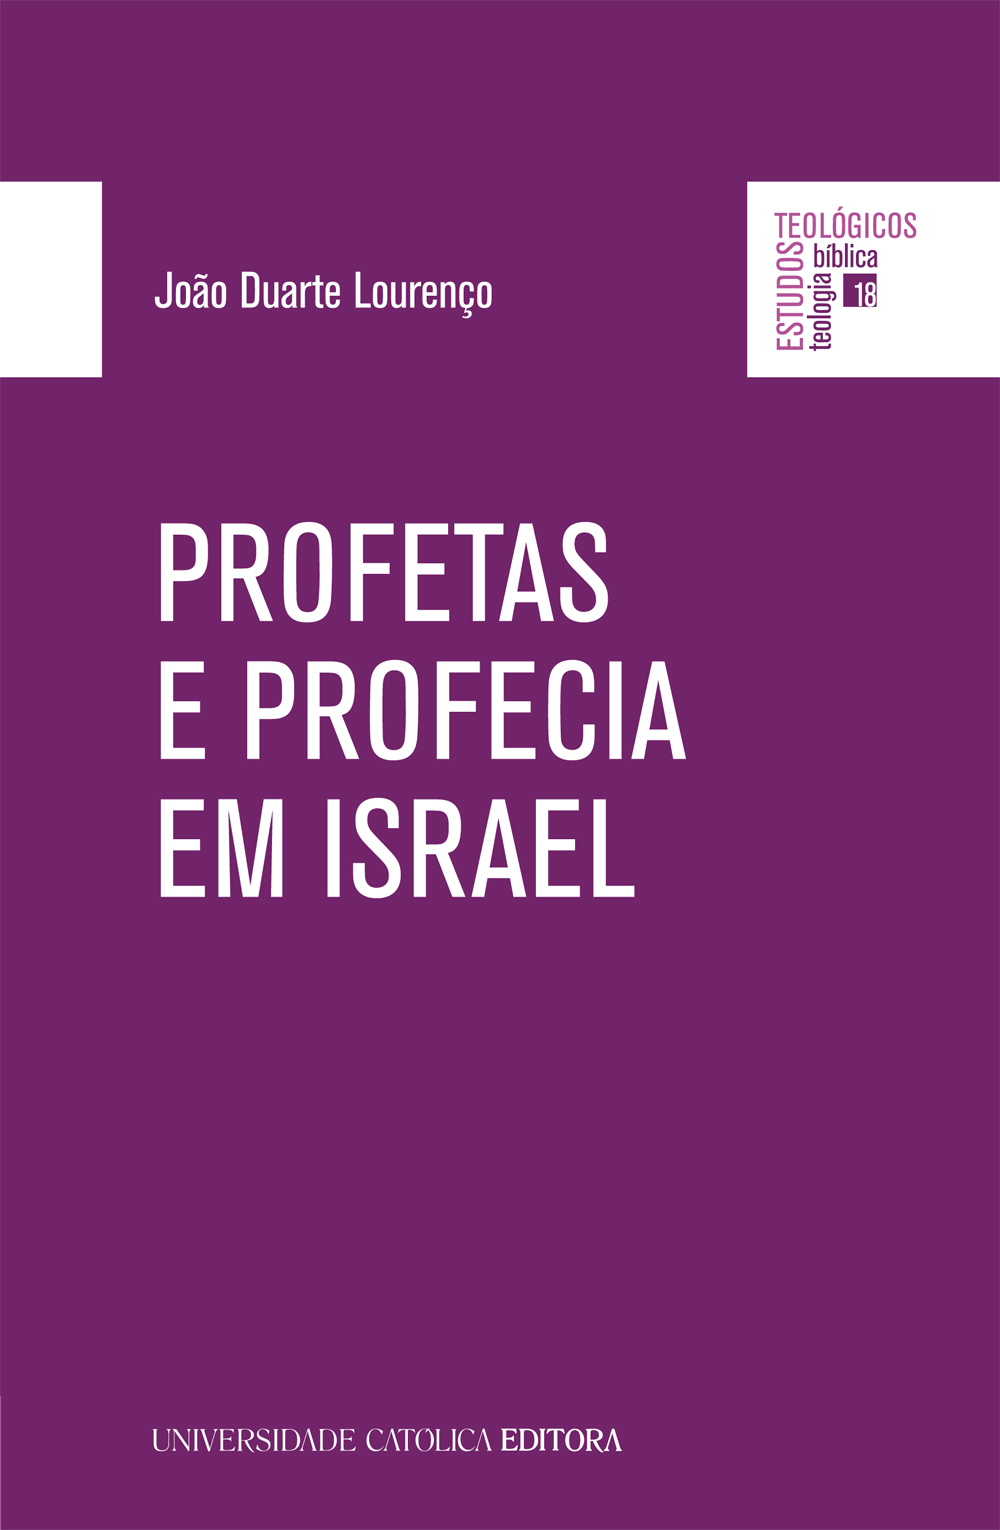 PROFETAS E PROFECIA EM ISRAEL - Texto e Mensagem - Universidade Católica Editora